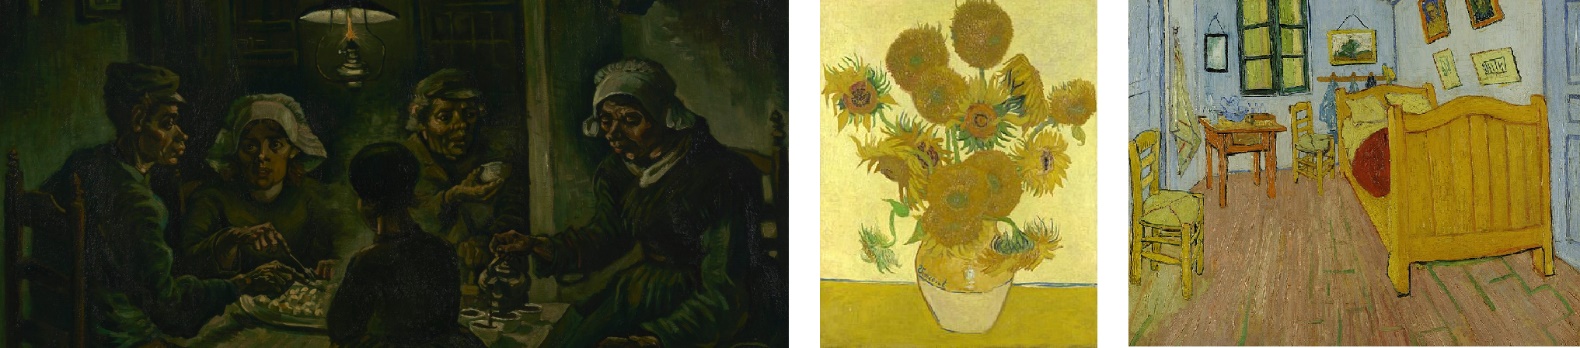 Van Gogh pictures